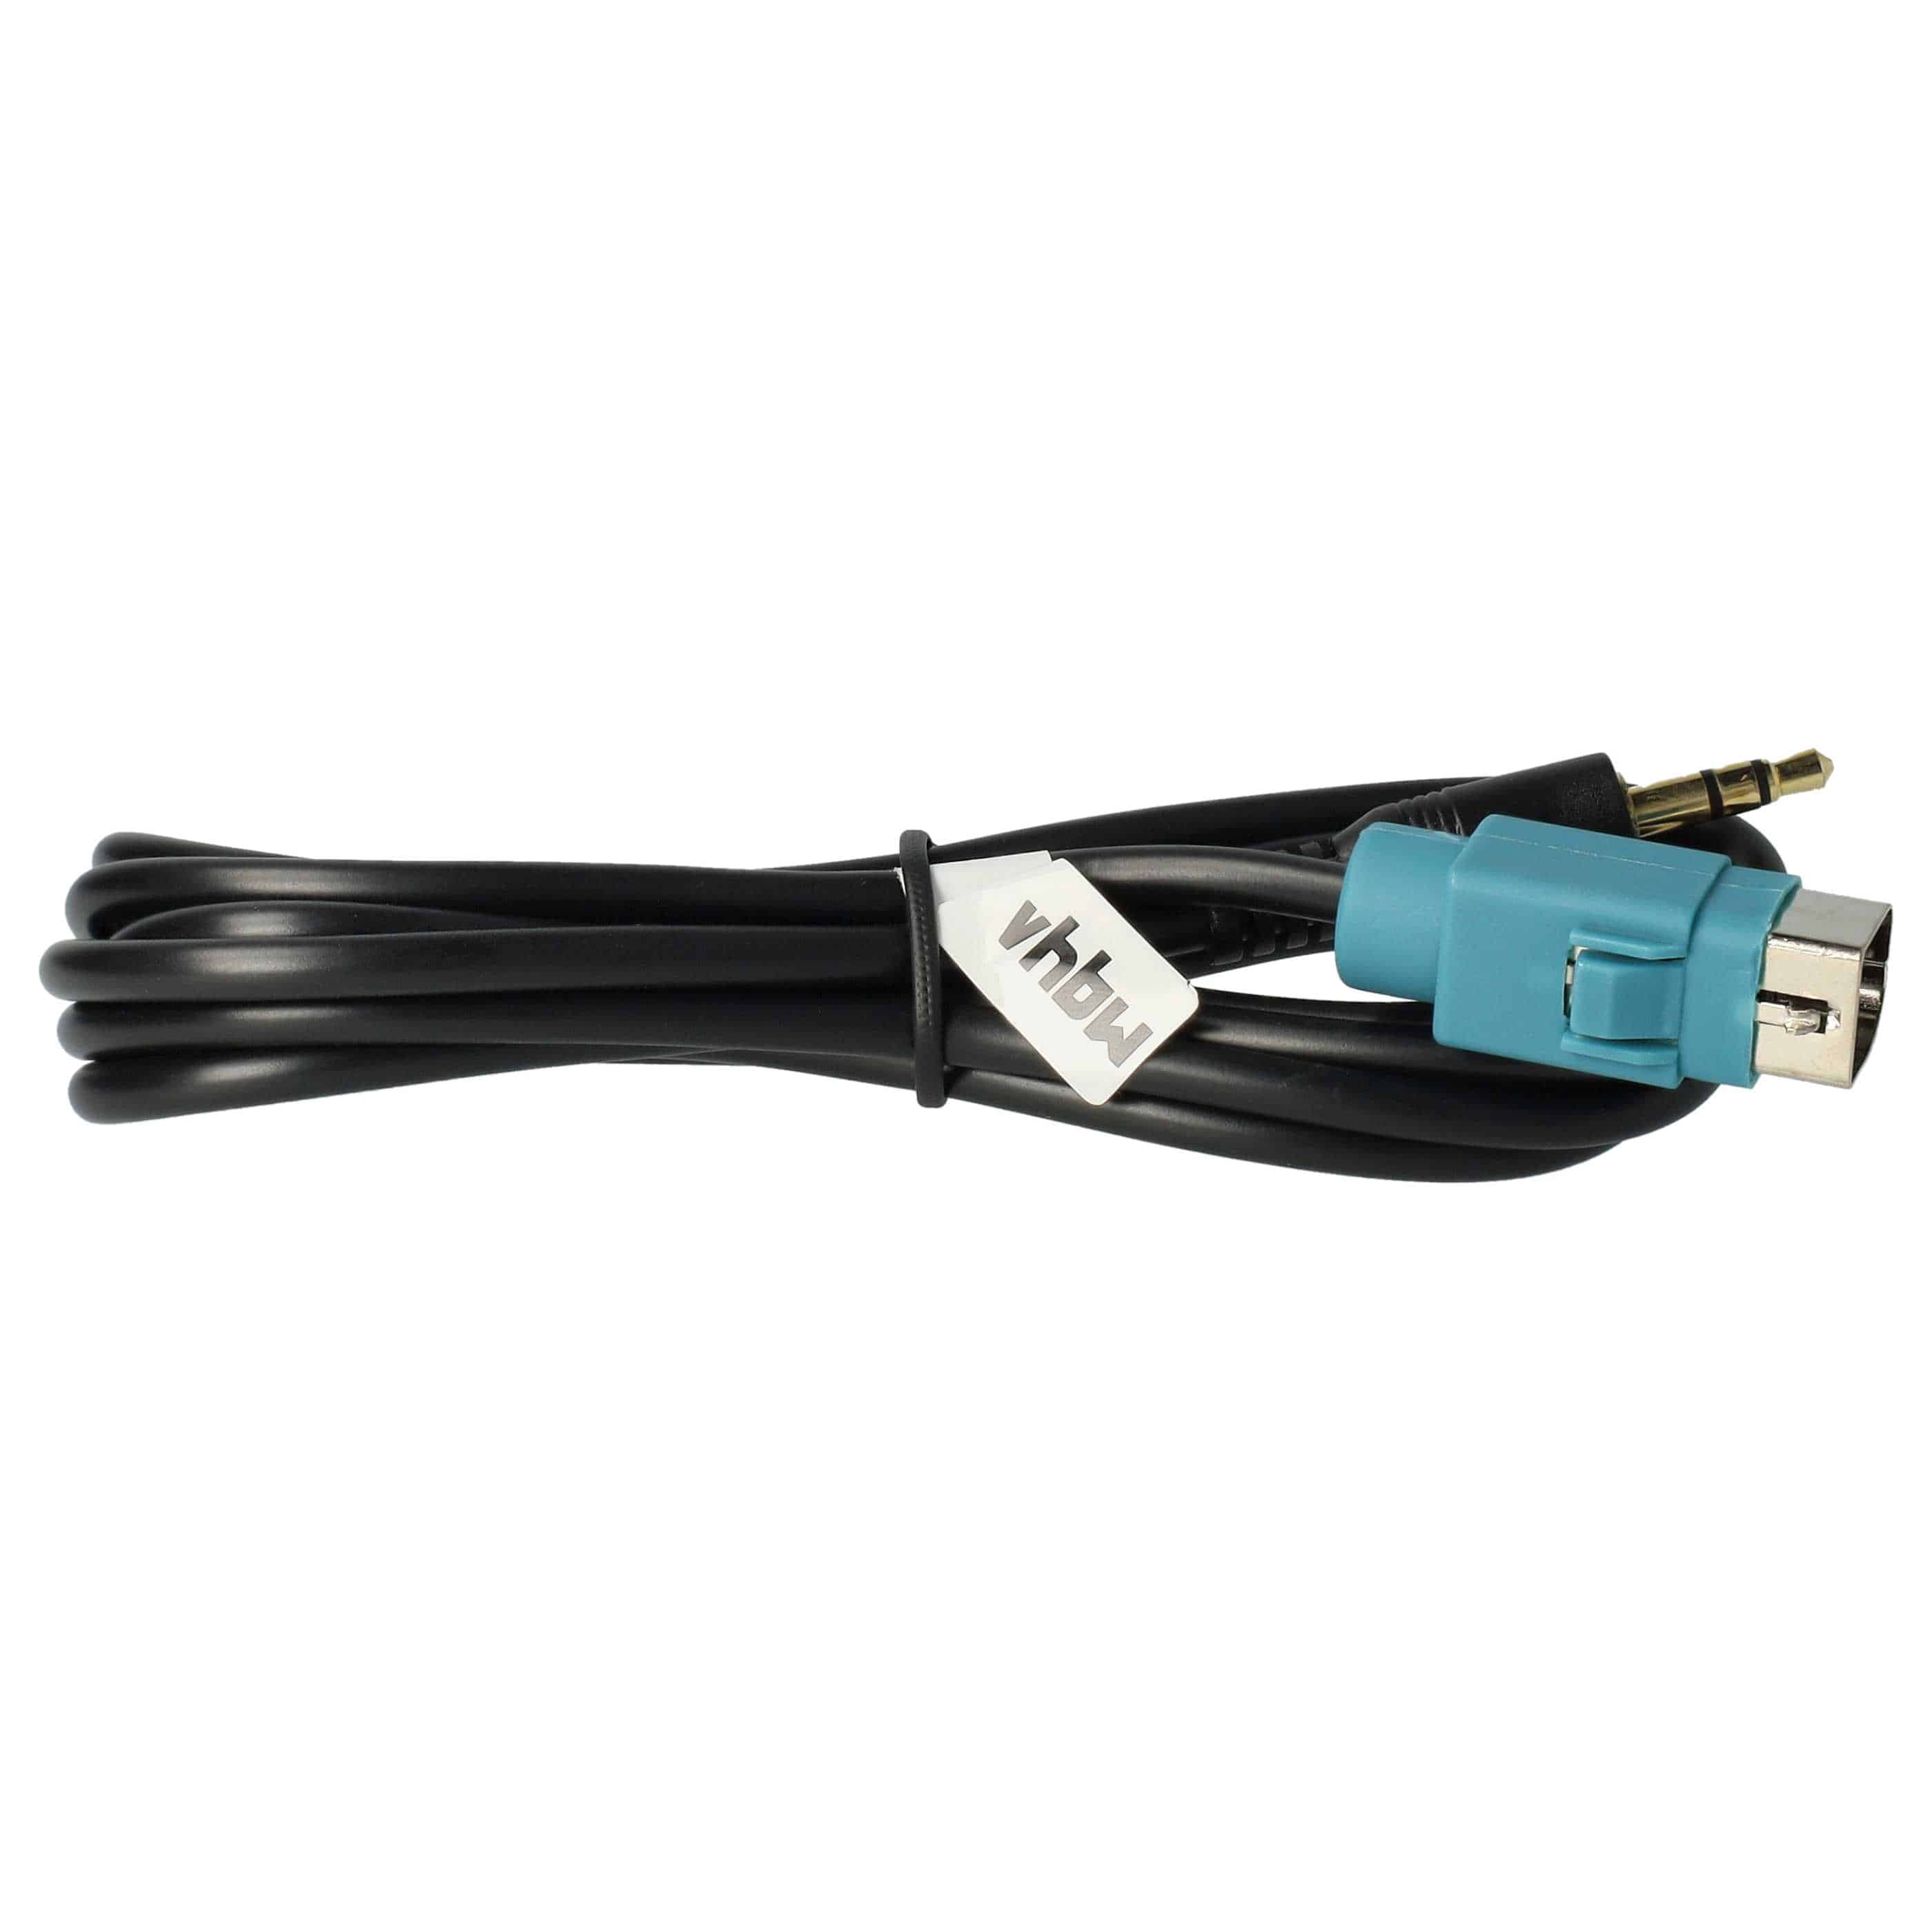 Kabel AUX do radia samochodowego Alpine i in. zam. Alpine KCE-237B - 100 cm, USB